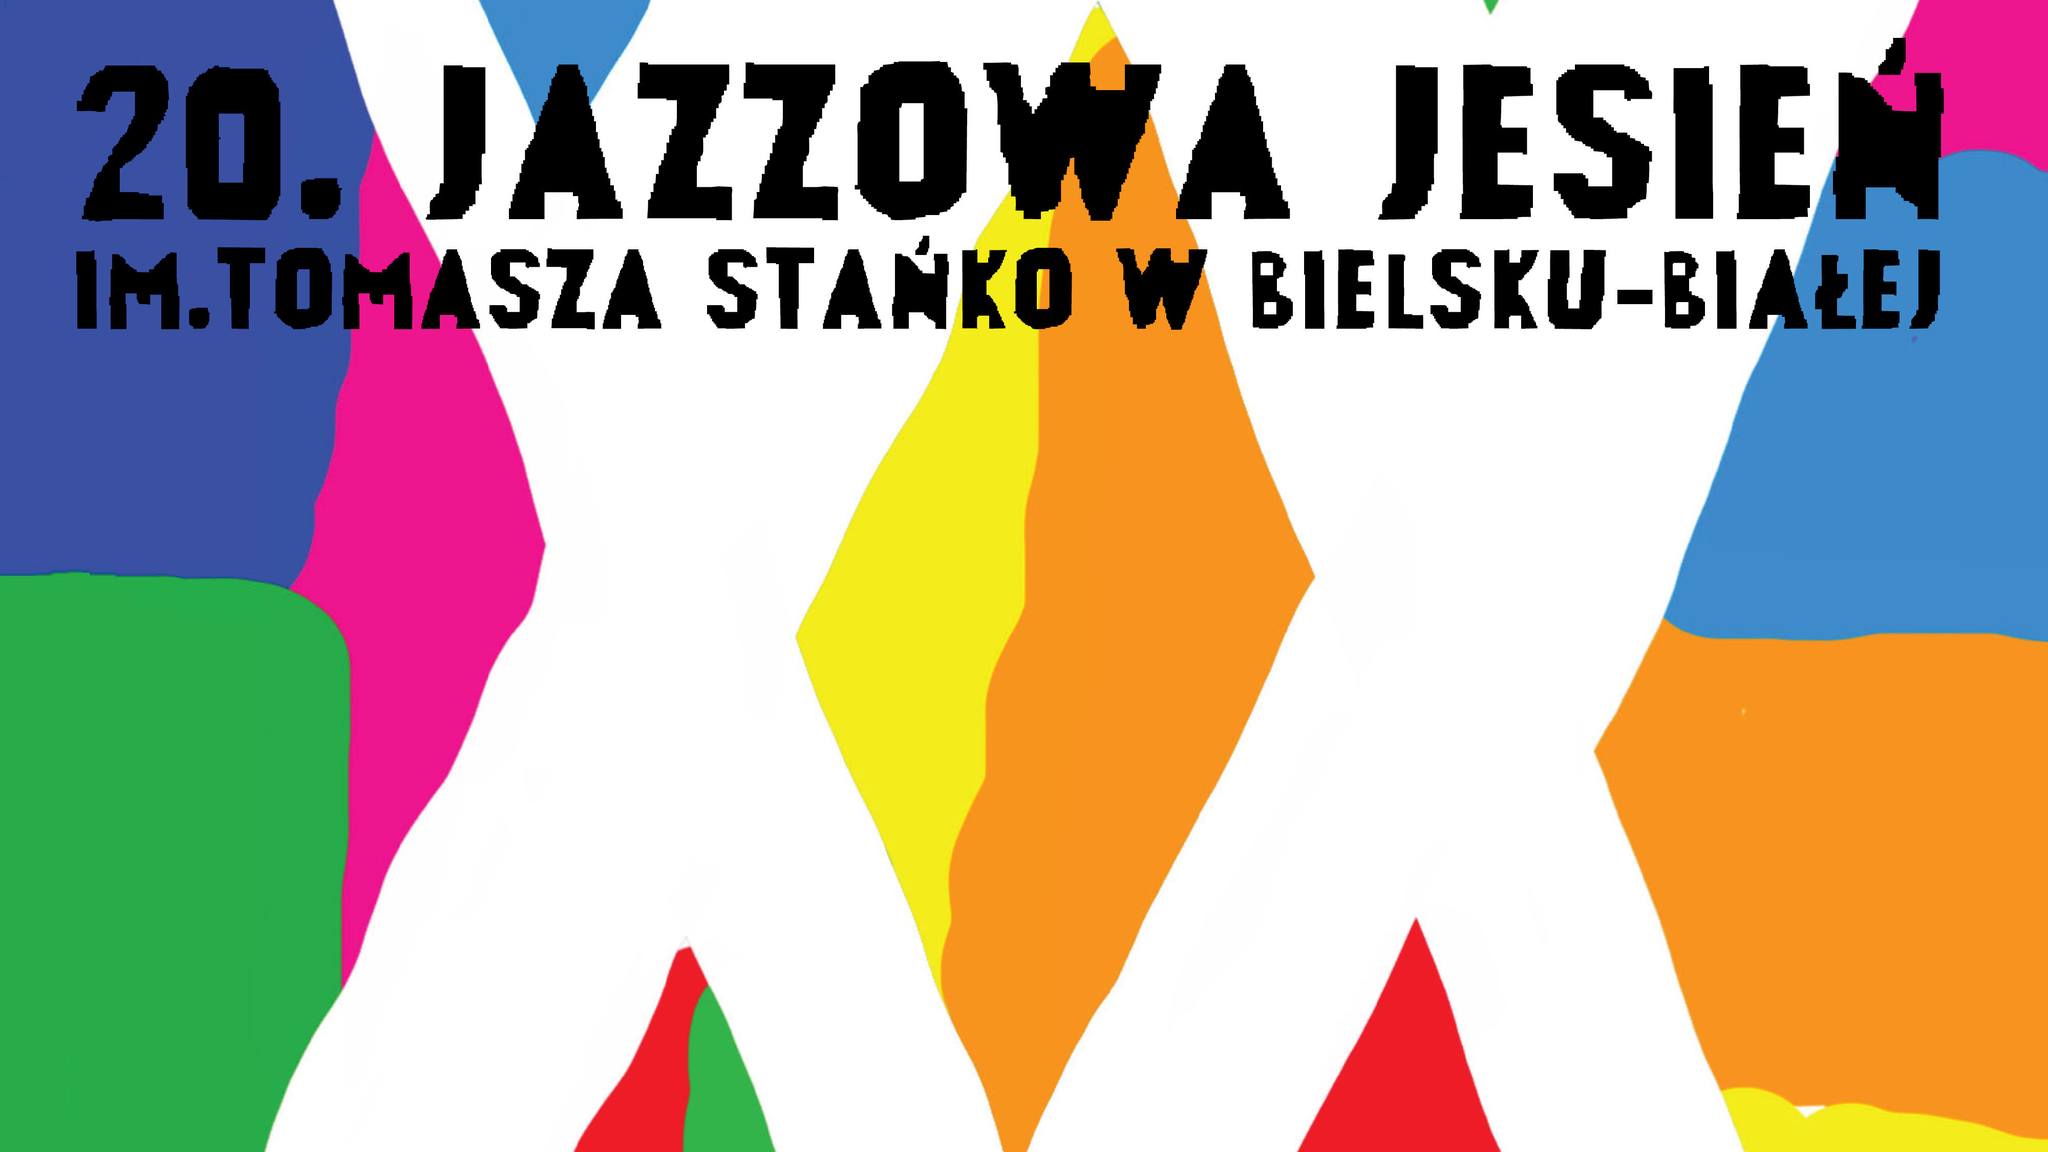  20. Jazzowa Jesień w Bielsku-Białej im. Tomasza Stańko Na zdjęciu plakat festiwalu